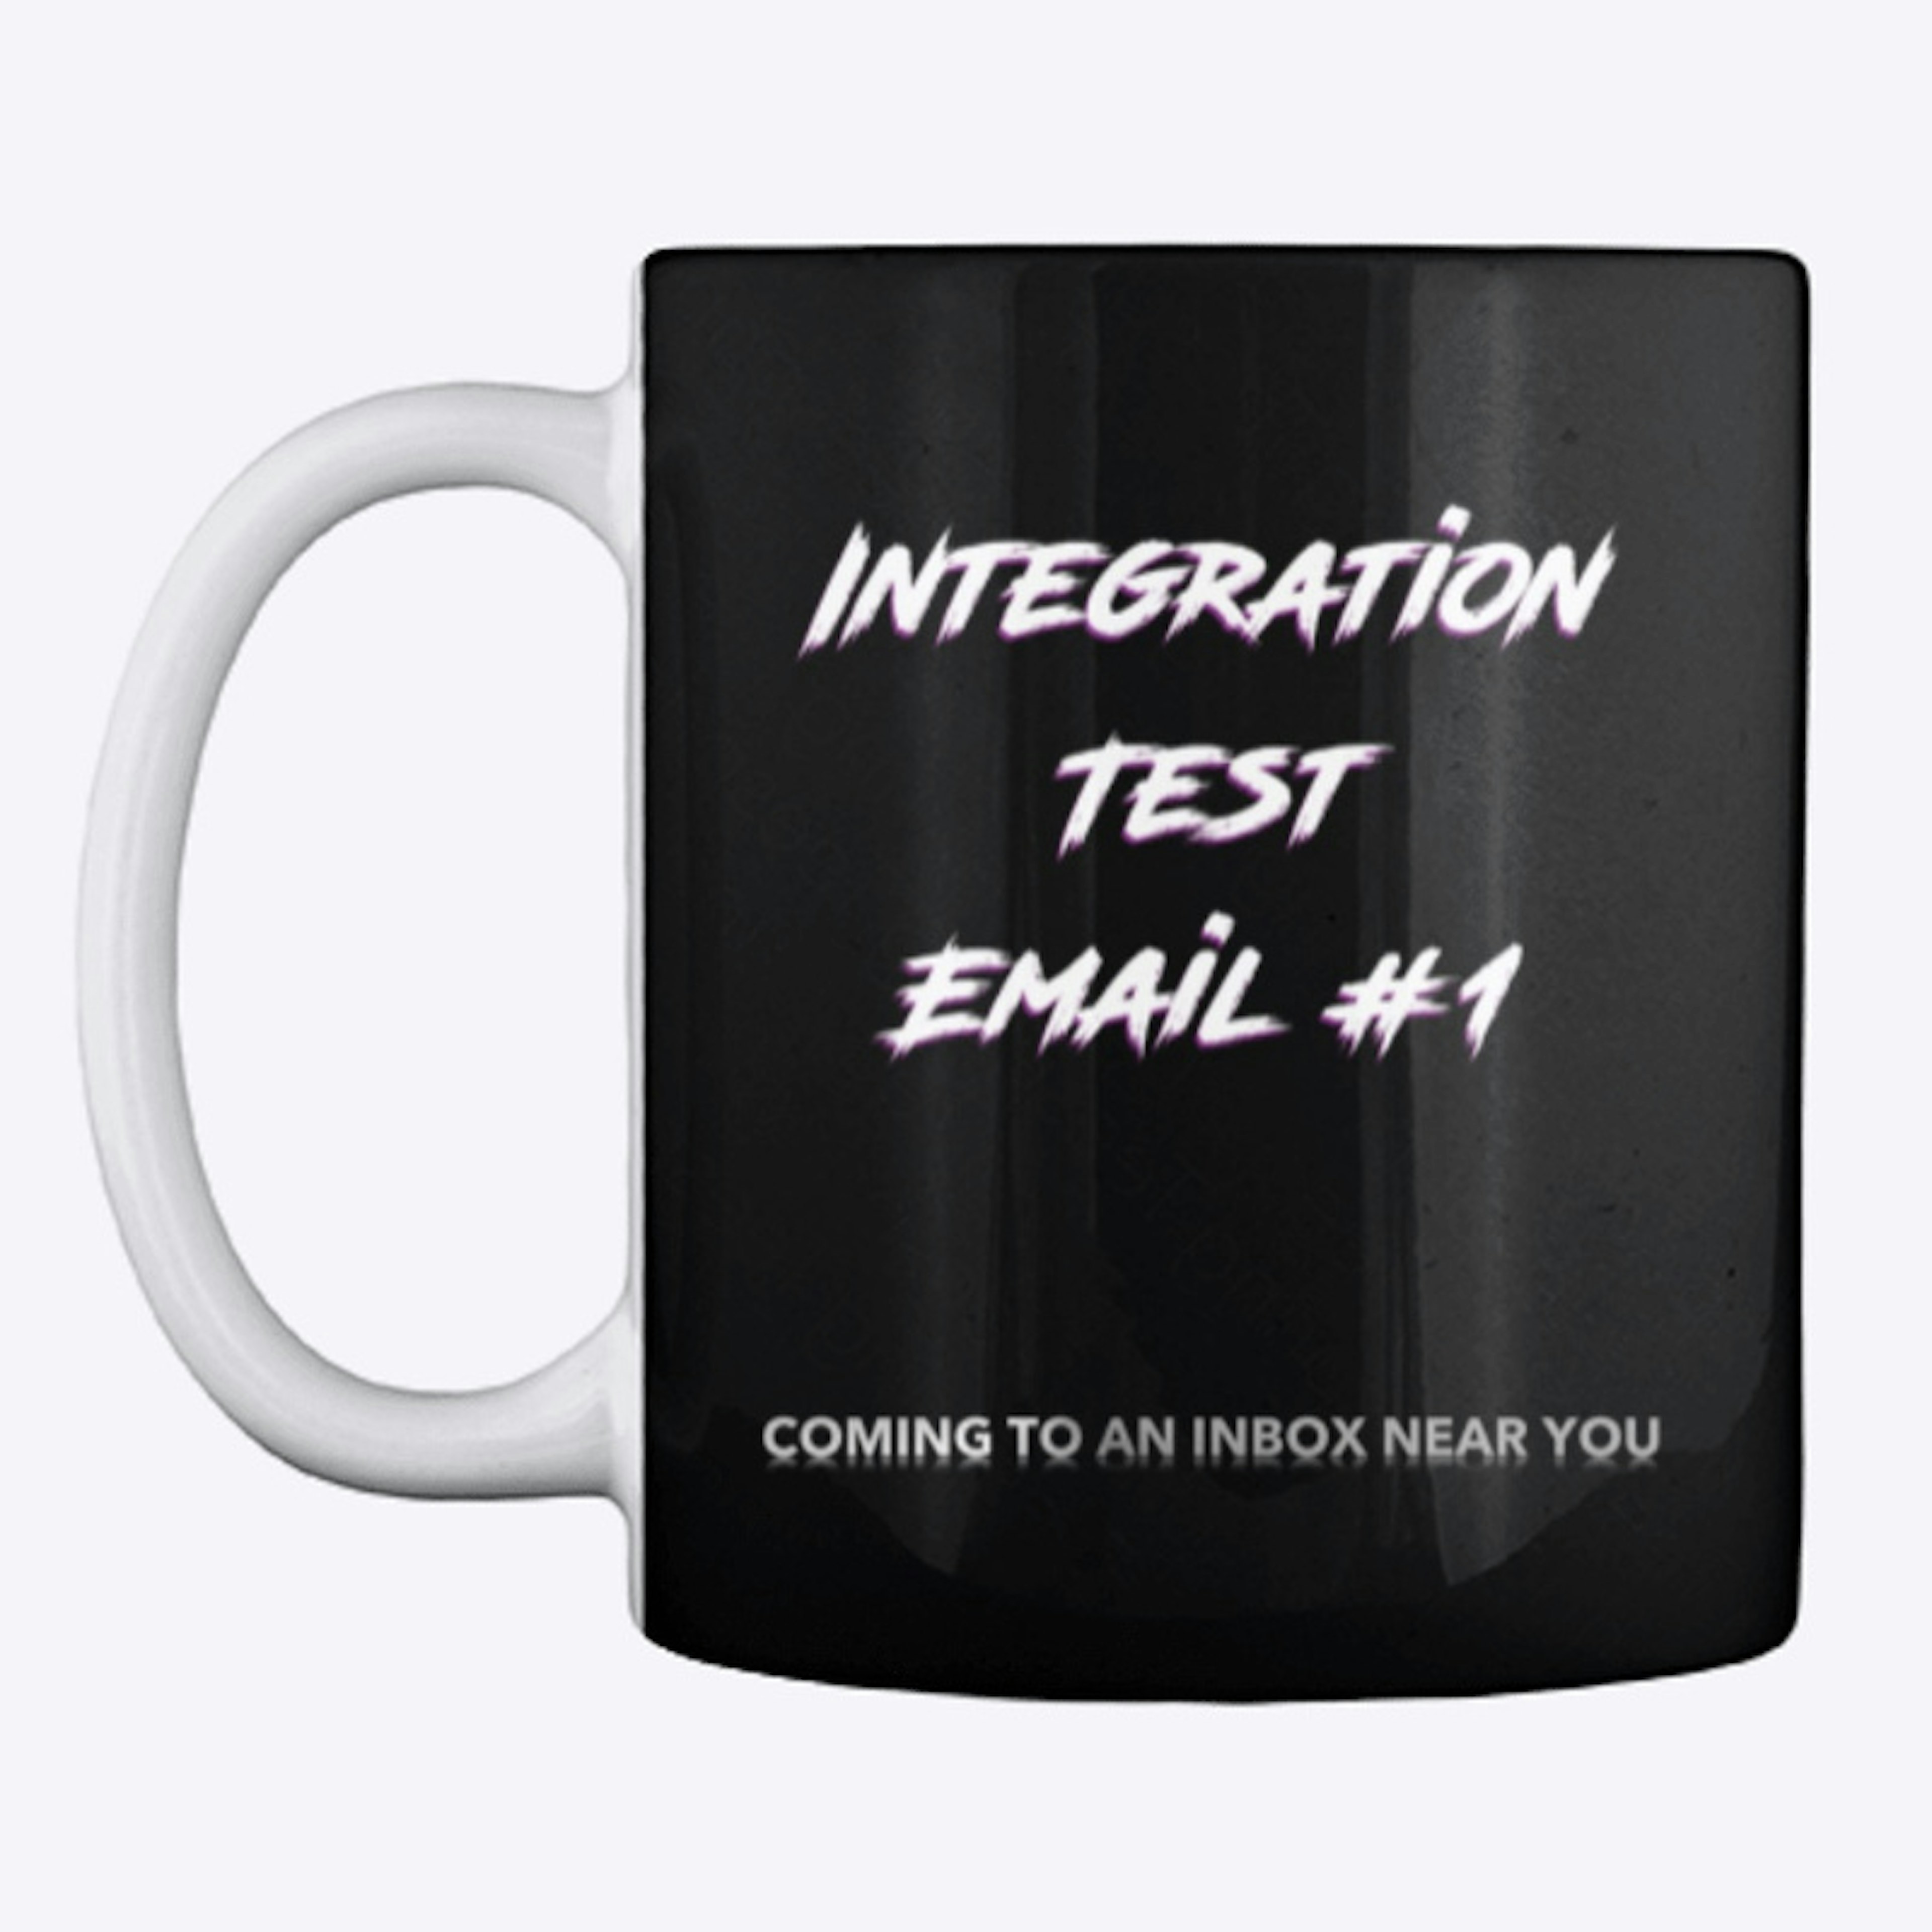 Integration Test Email